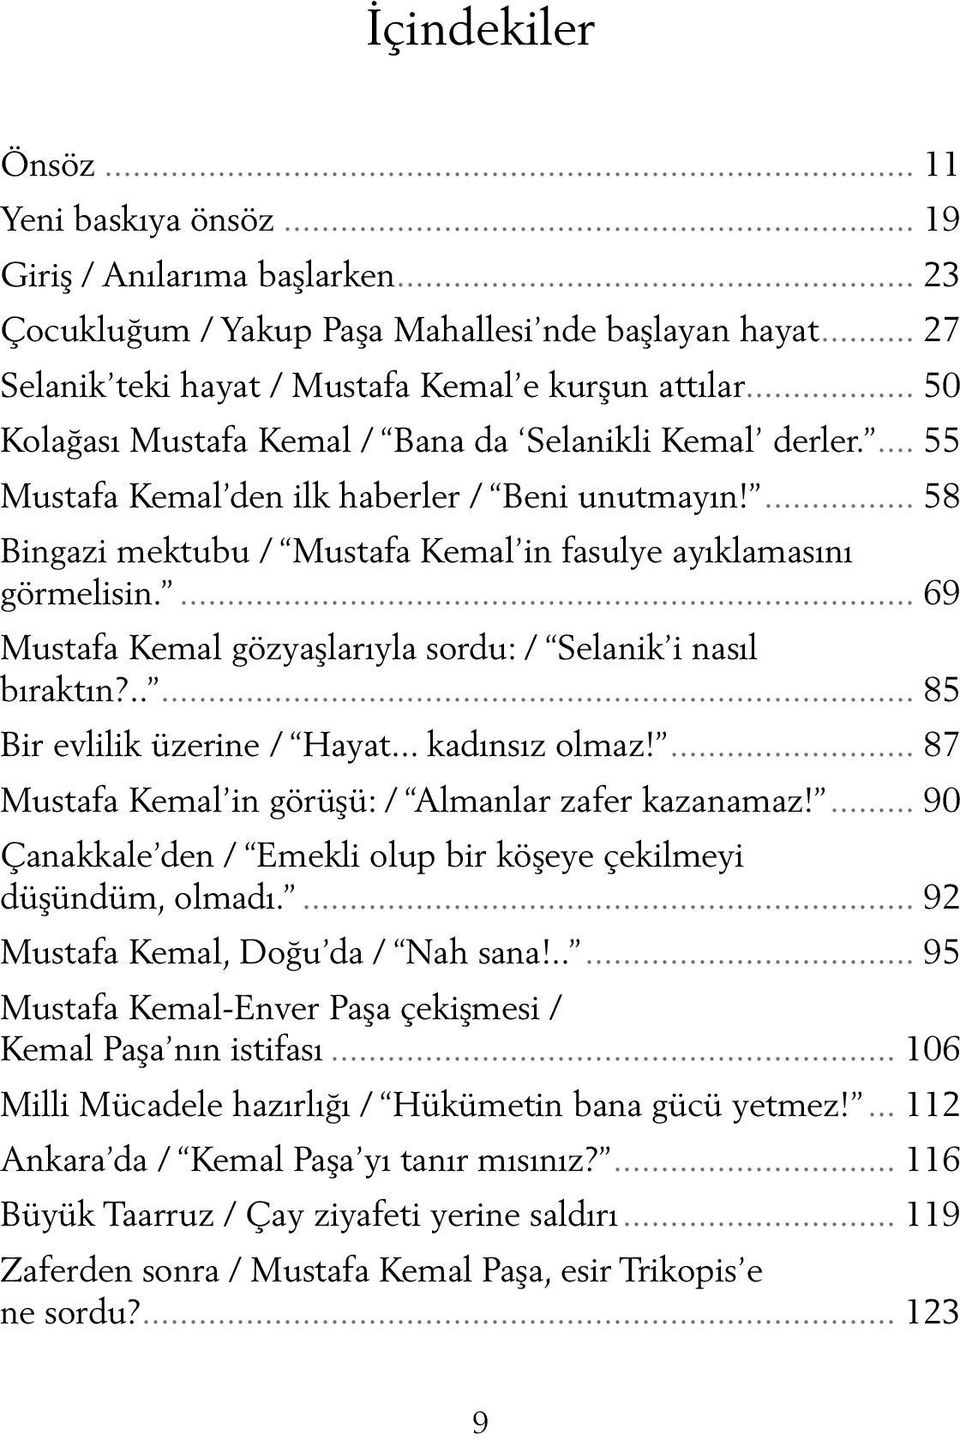 ... 69 Mustafa Kemal gözyaşlarıyla sordu: / Selanik i nasıl bıraktın?..... 85 Bir evlilik üzerine / Hayat... kadınsız olmaz!... 87 Mustafa Kemal in görüşü: / Almanlar zafer kazanamaz!